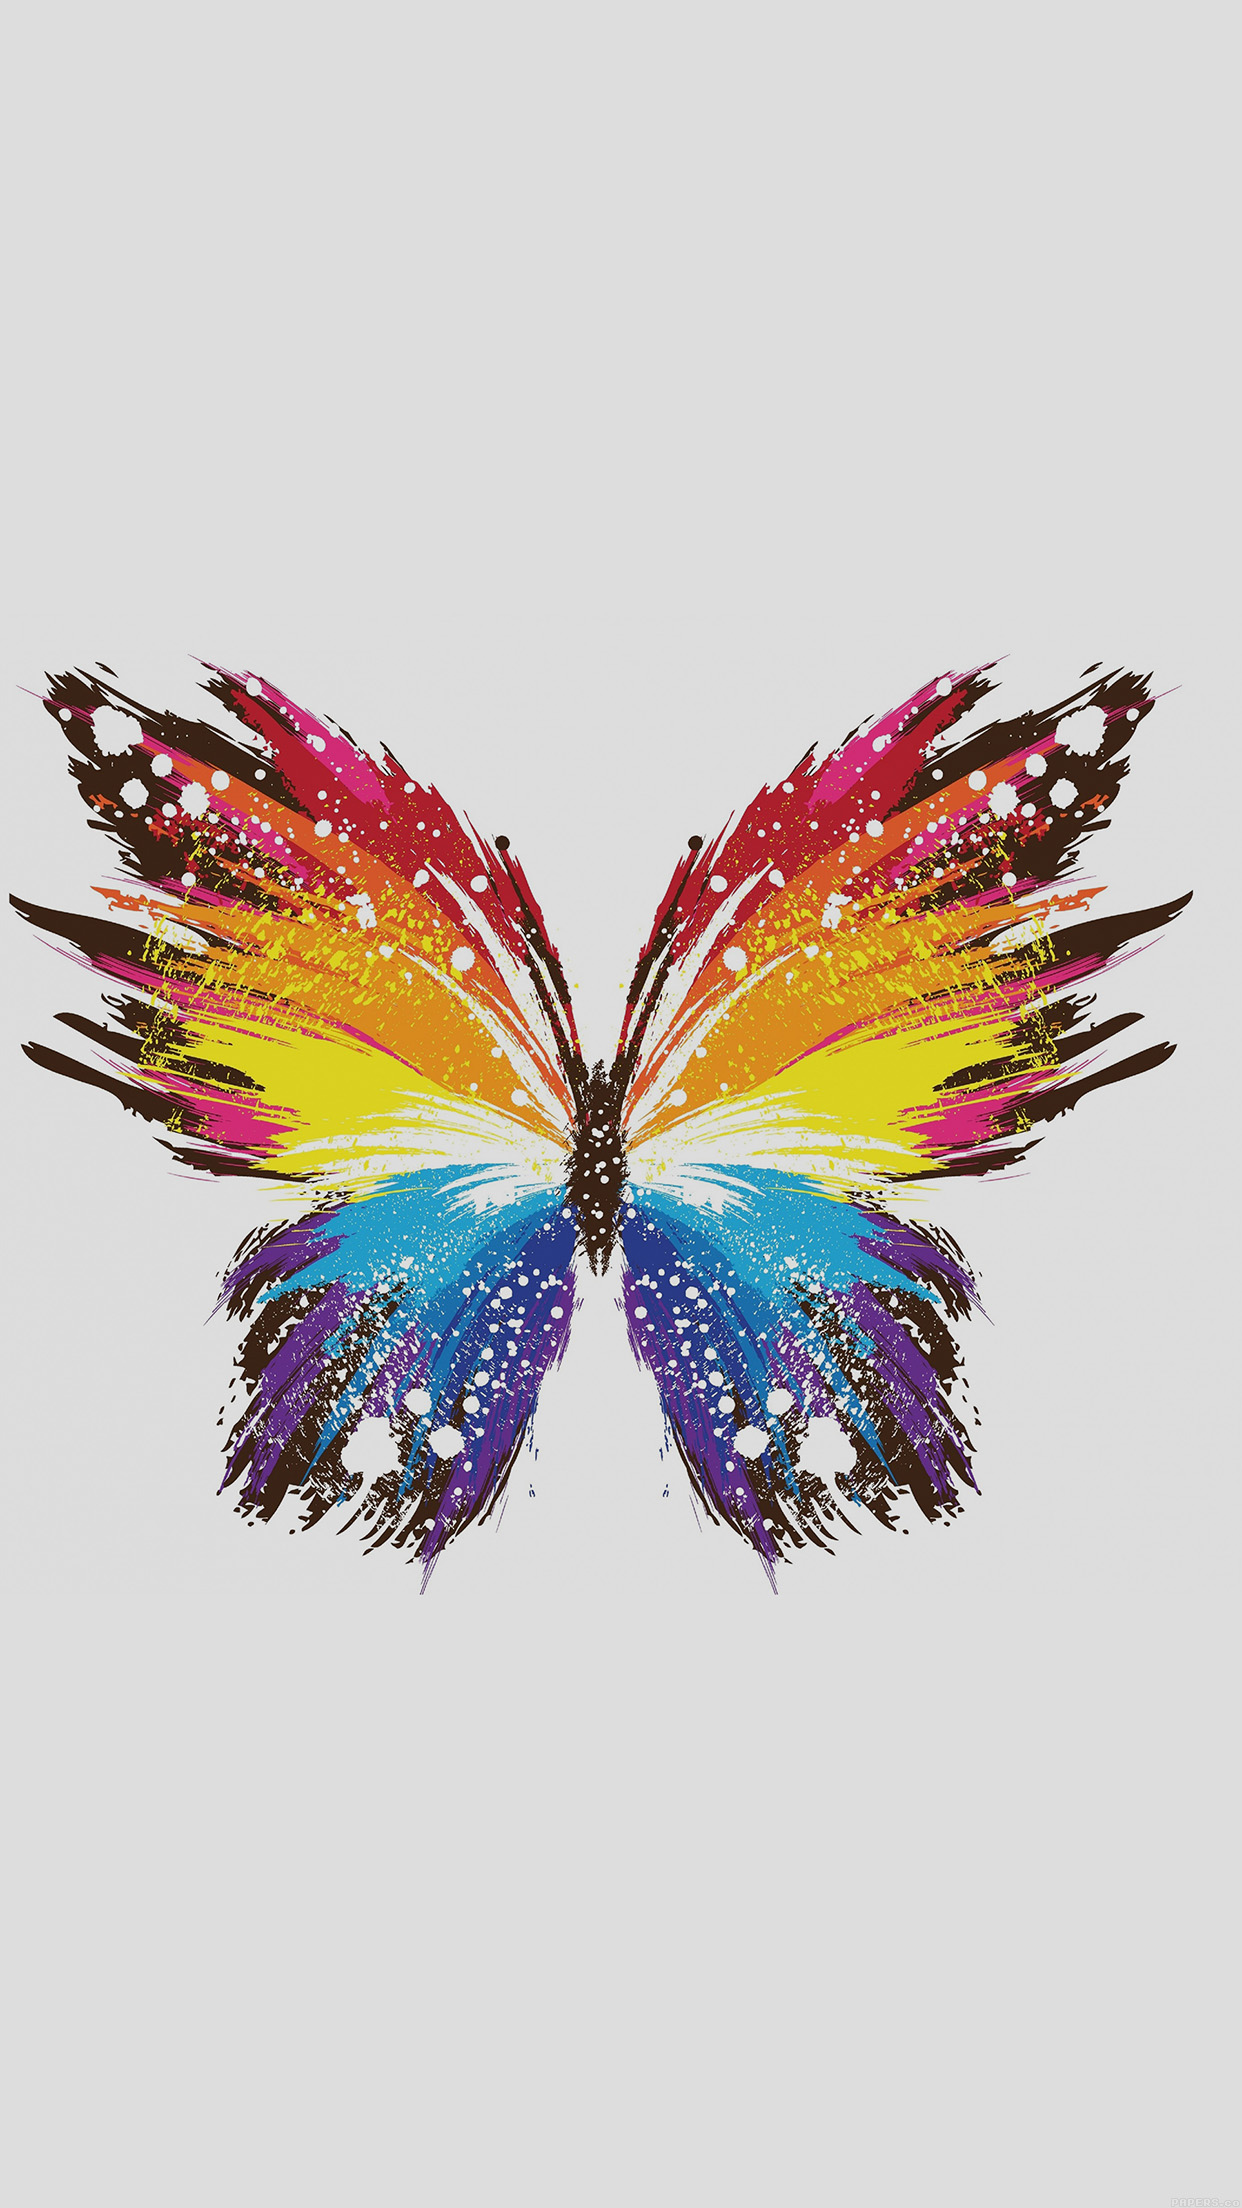 蝶のiphoneの壁紙,バタフライ,羽,フェザー,昆虫,蛾と蝶